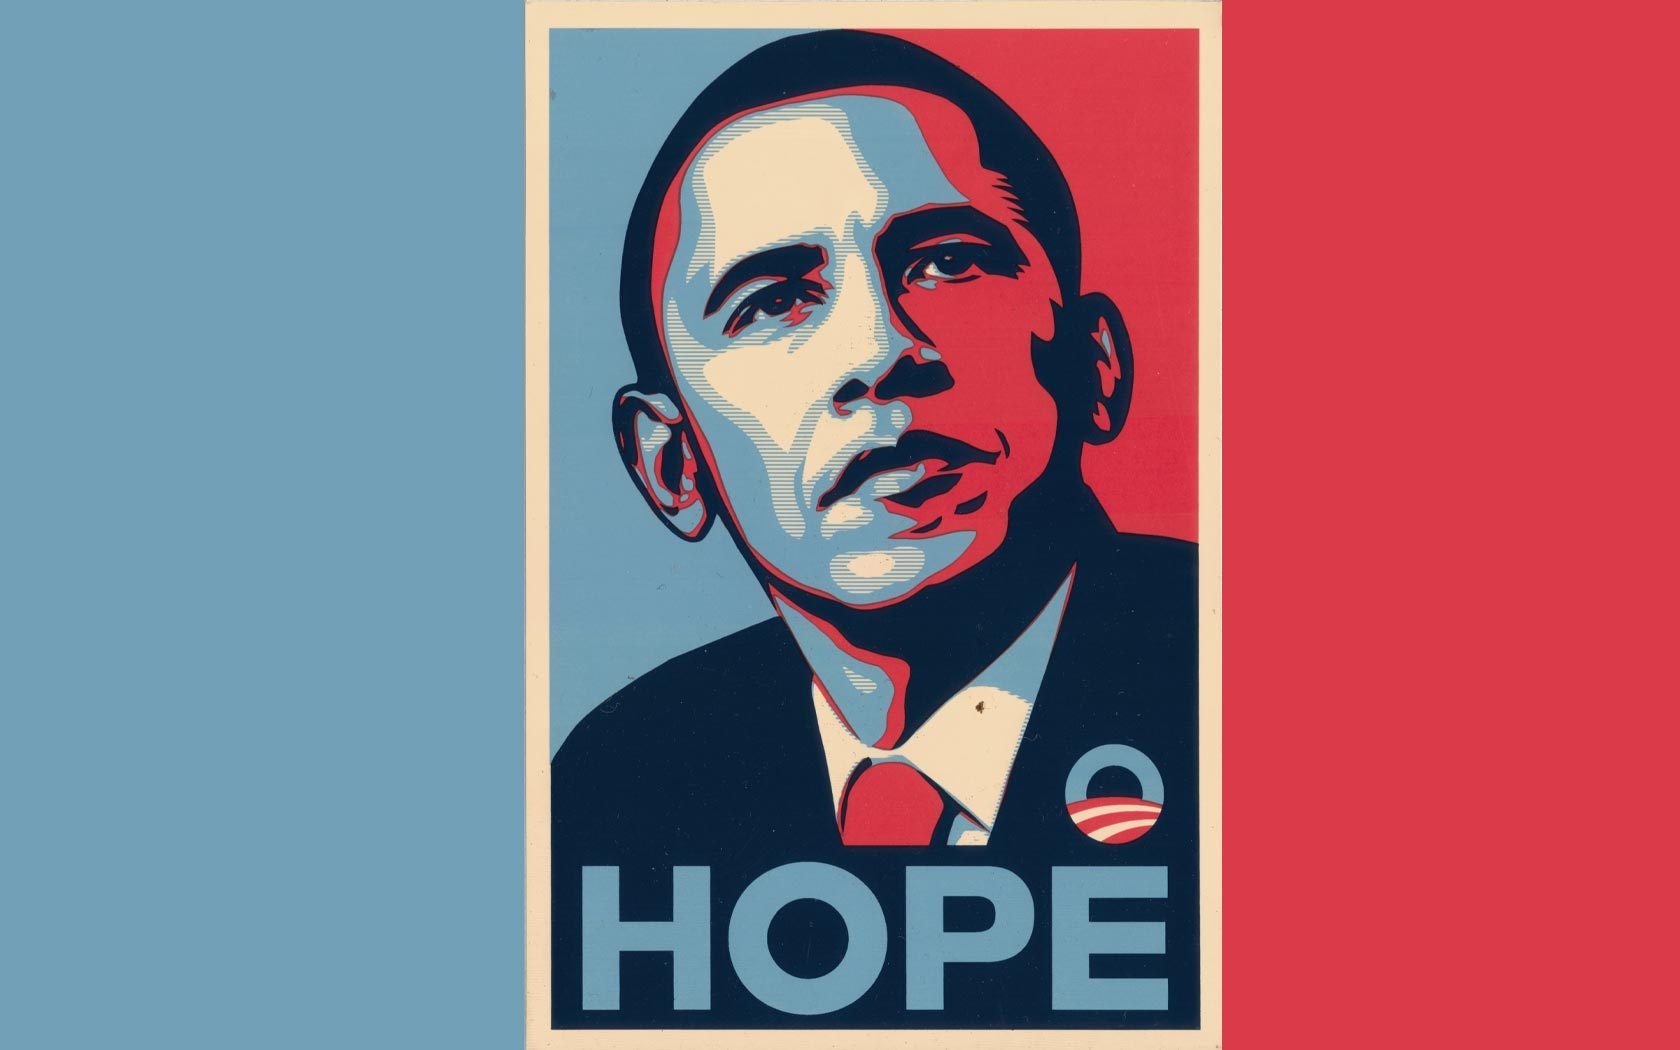 ObamaHope - Barack Obama Wallpaper (2587361) - Fanpop